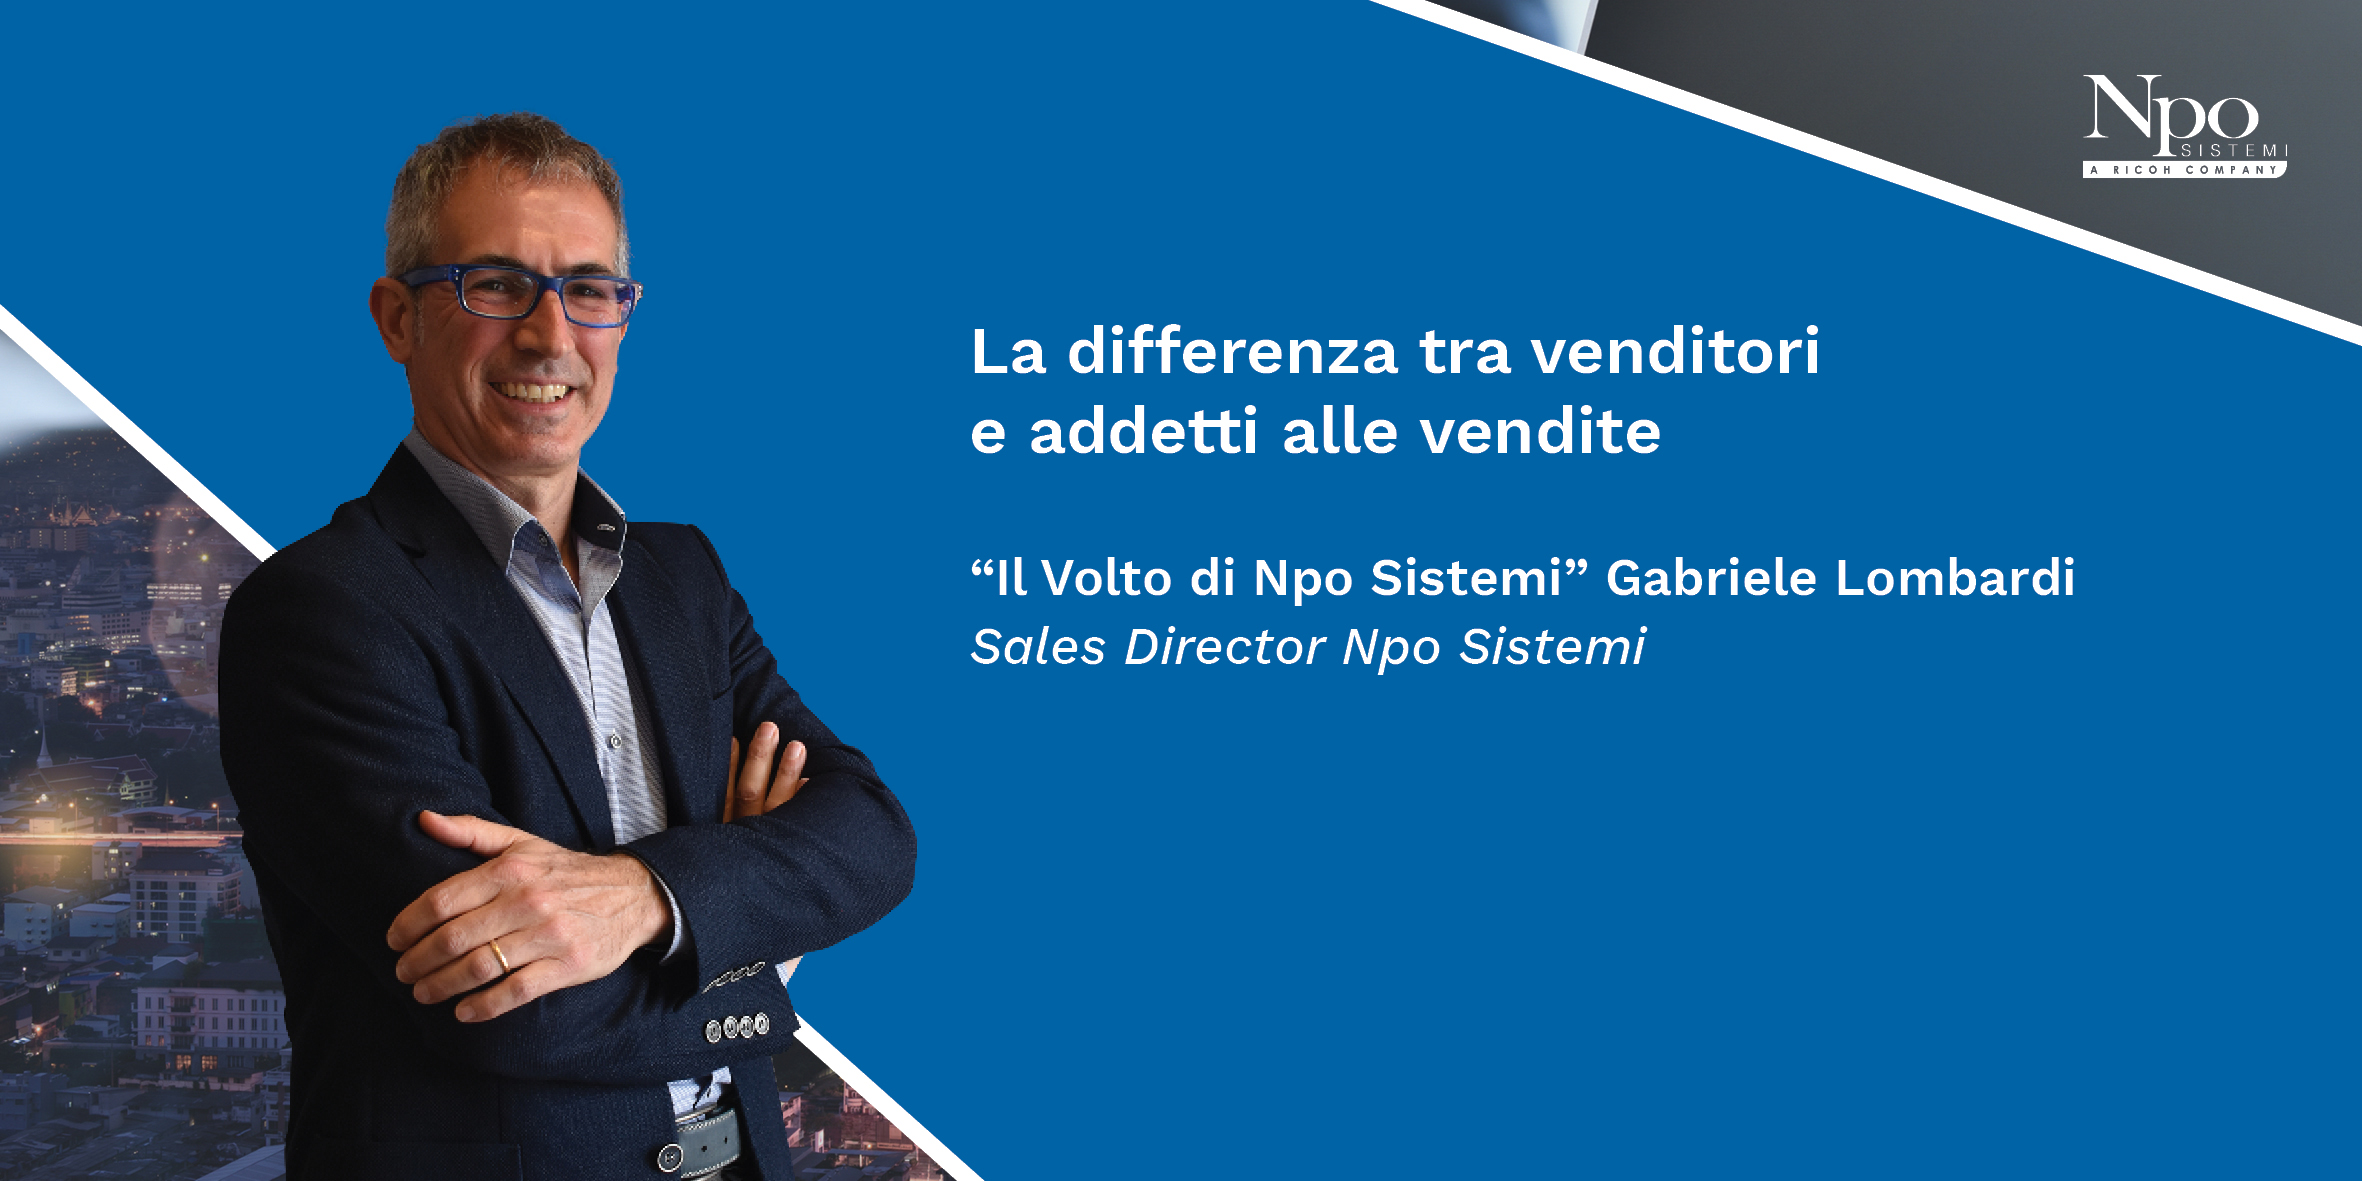 IL VOLTO DI NPO SISTEMI_Gabriele Lombardi: La differenza tra venditori e addetti alle vendite.